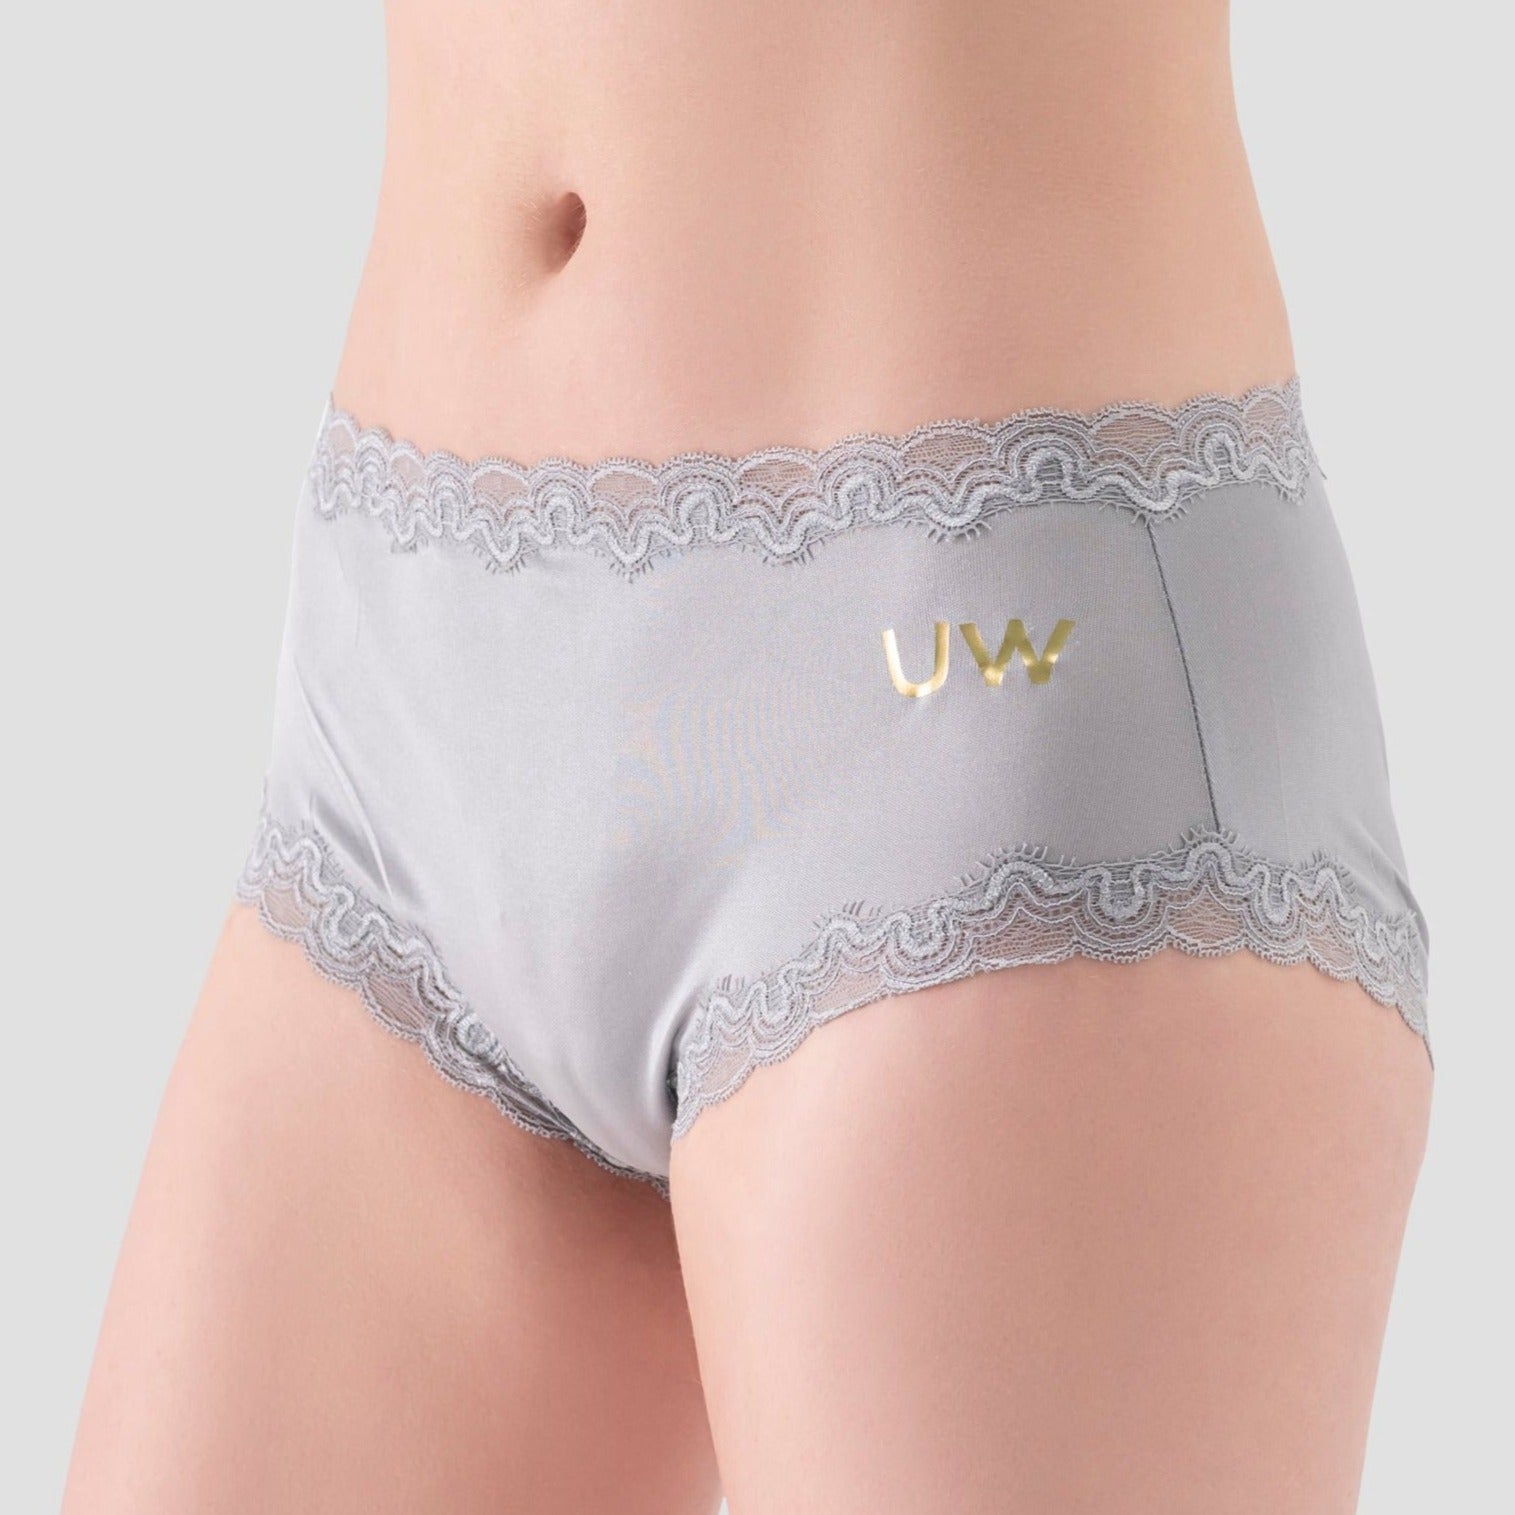 Soft Silk Underwear With Lace